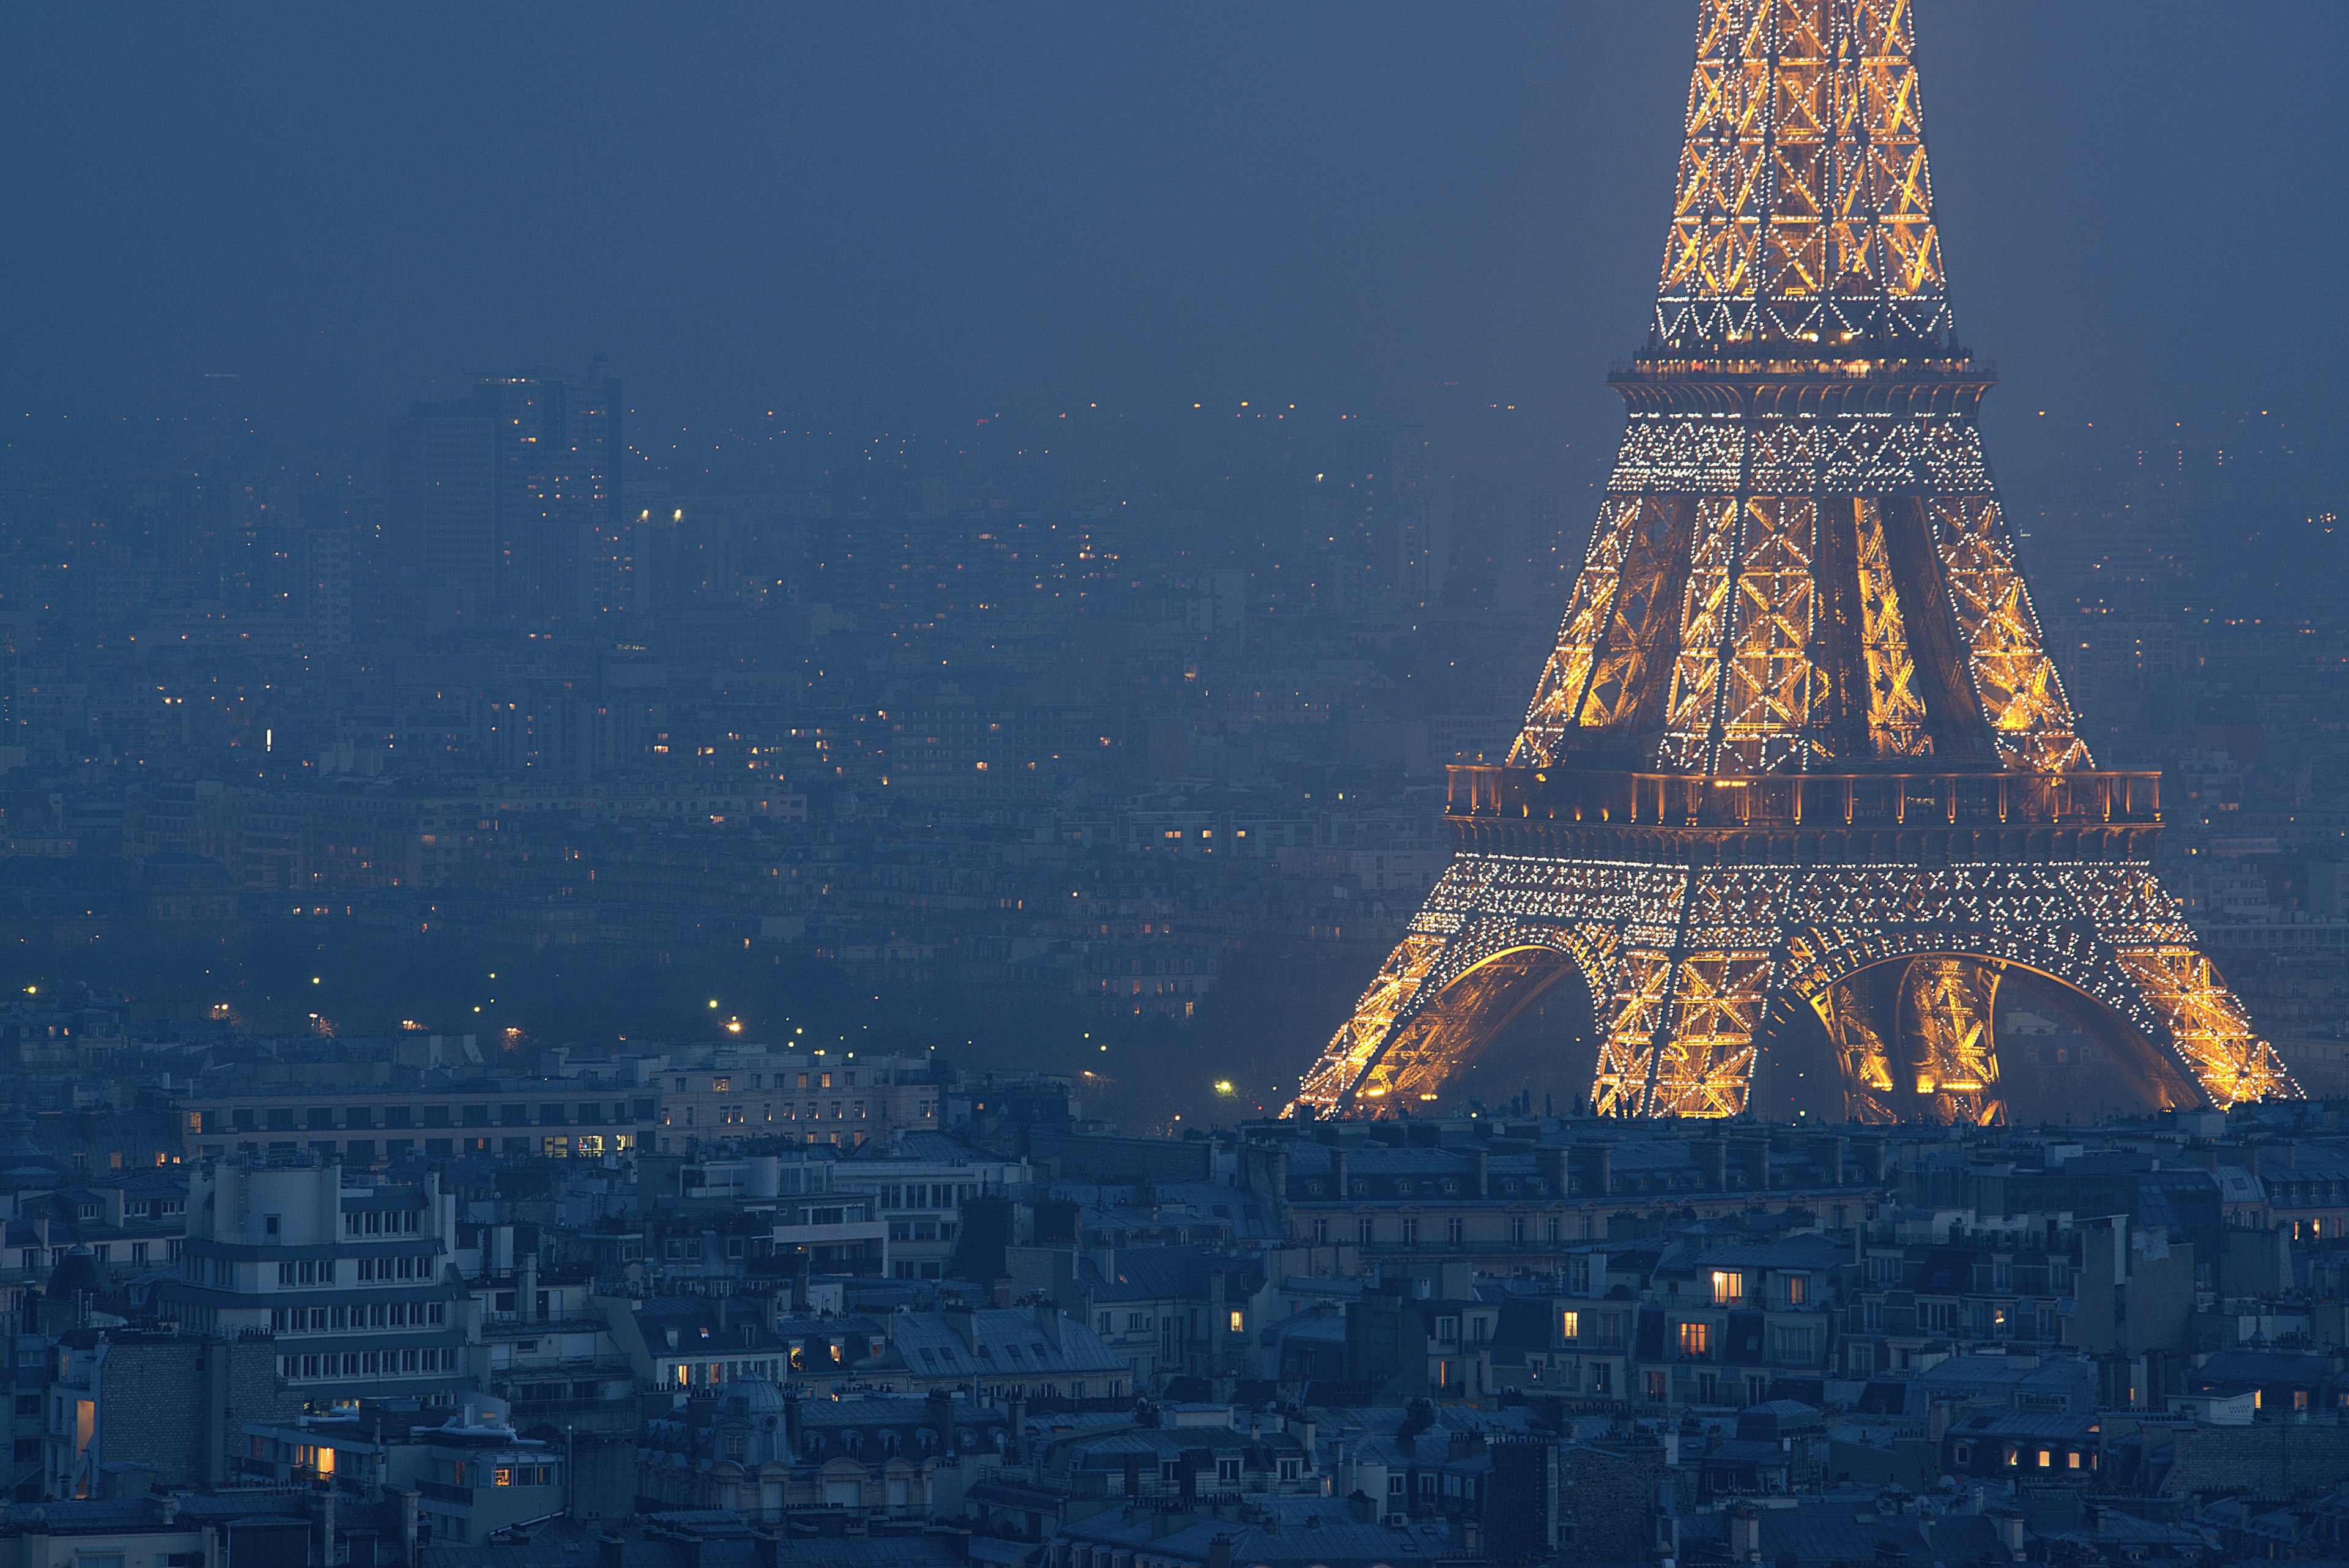 Eiffel Tower illuminated at night.